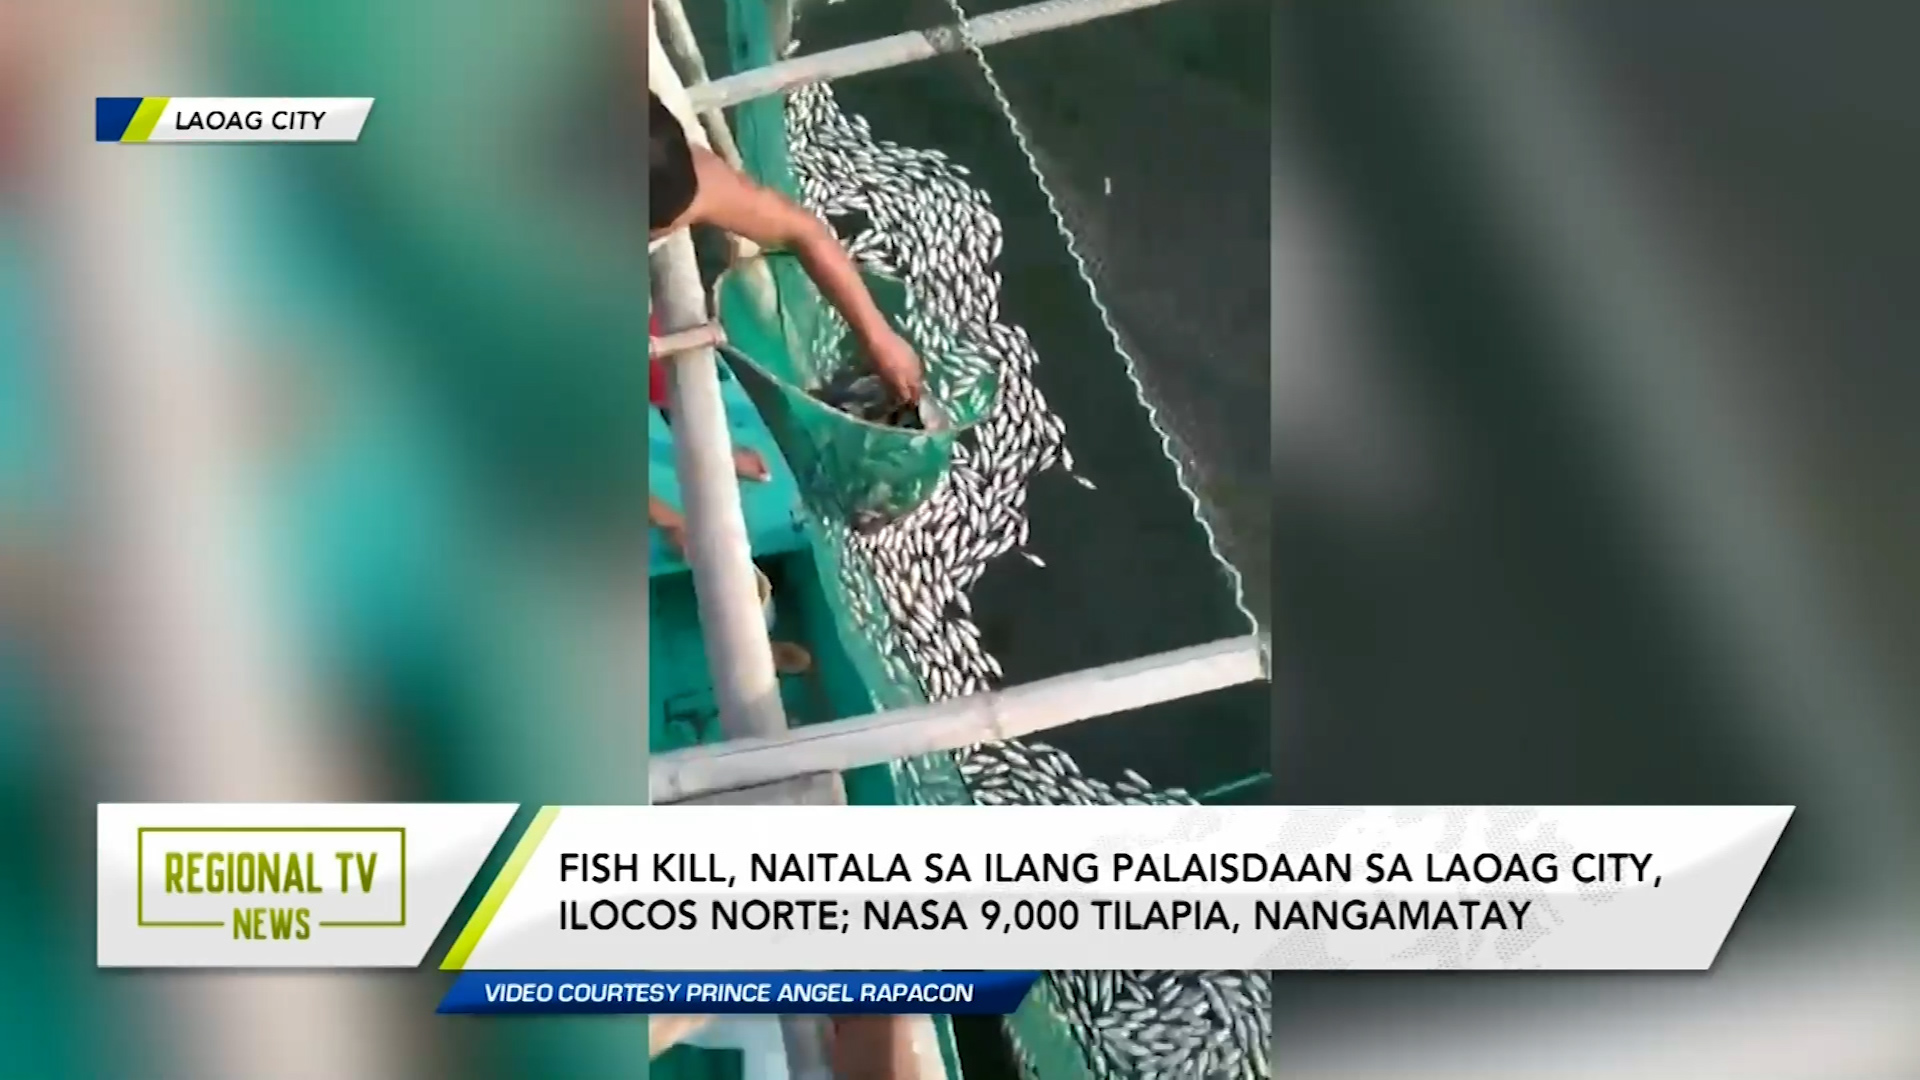 Fish kill, naitala sa ilang palaisdaan sa Laoag City, Ilocos Norte